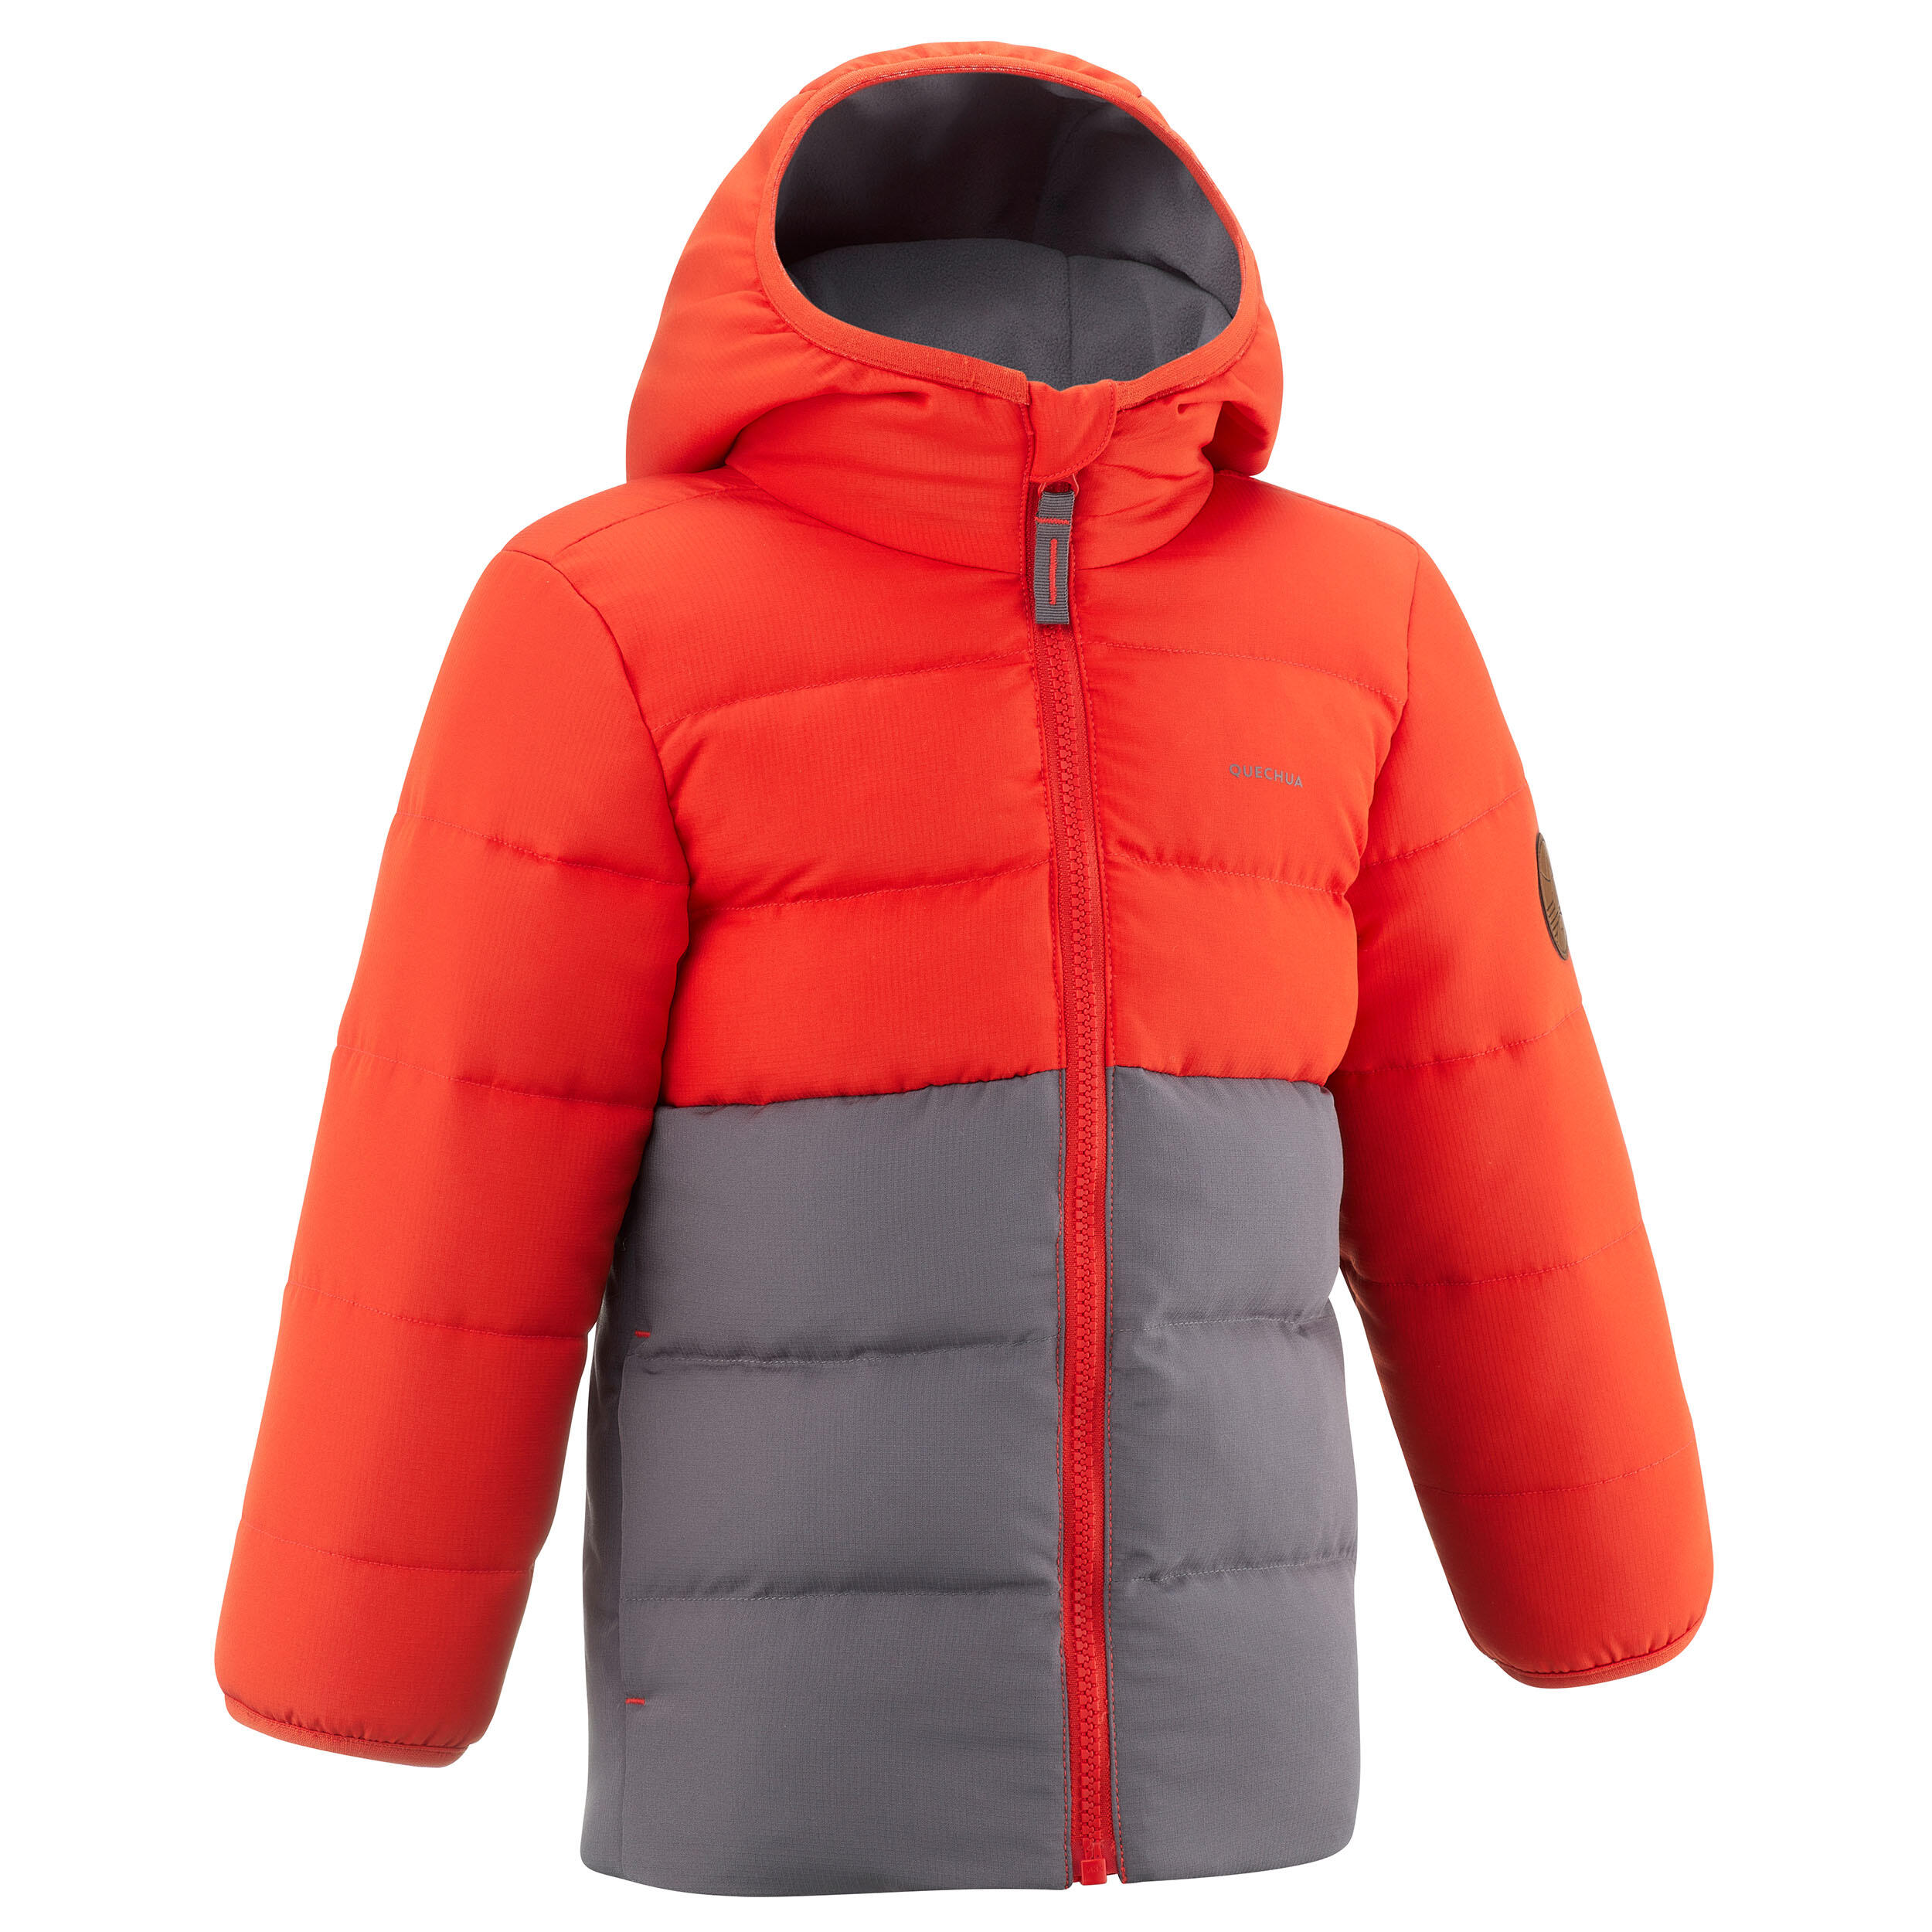 QUECHUA Kids’ Hiking Padded Jacket - Aged 2-6 - Orange and Grey